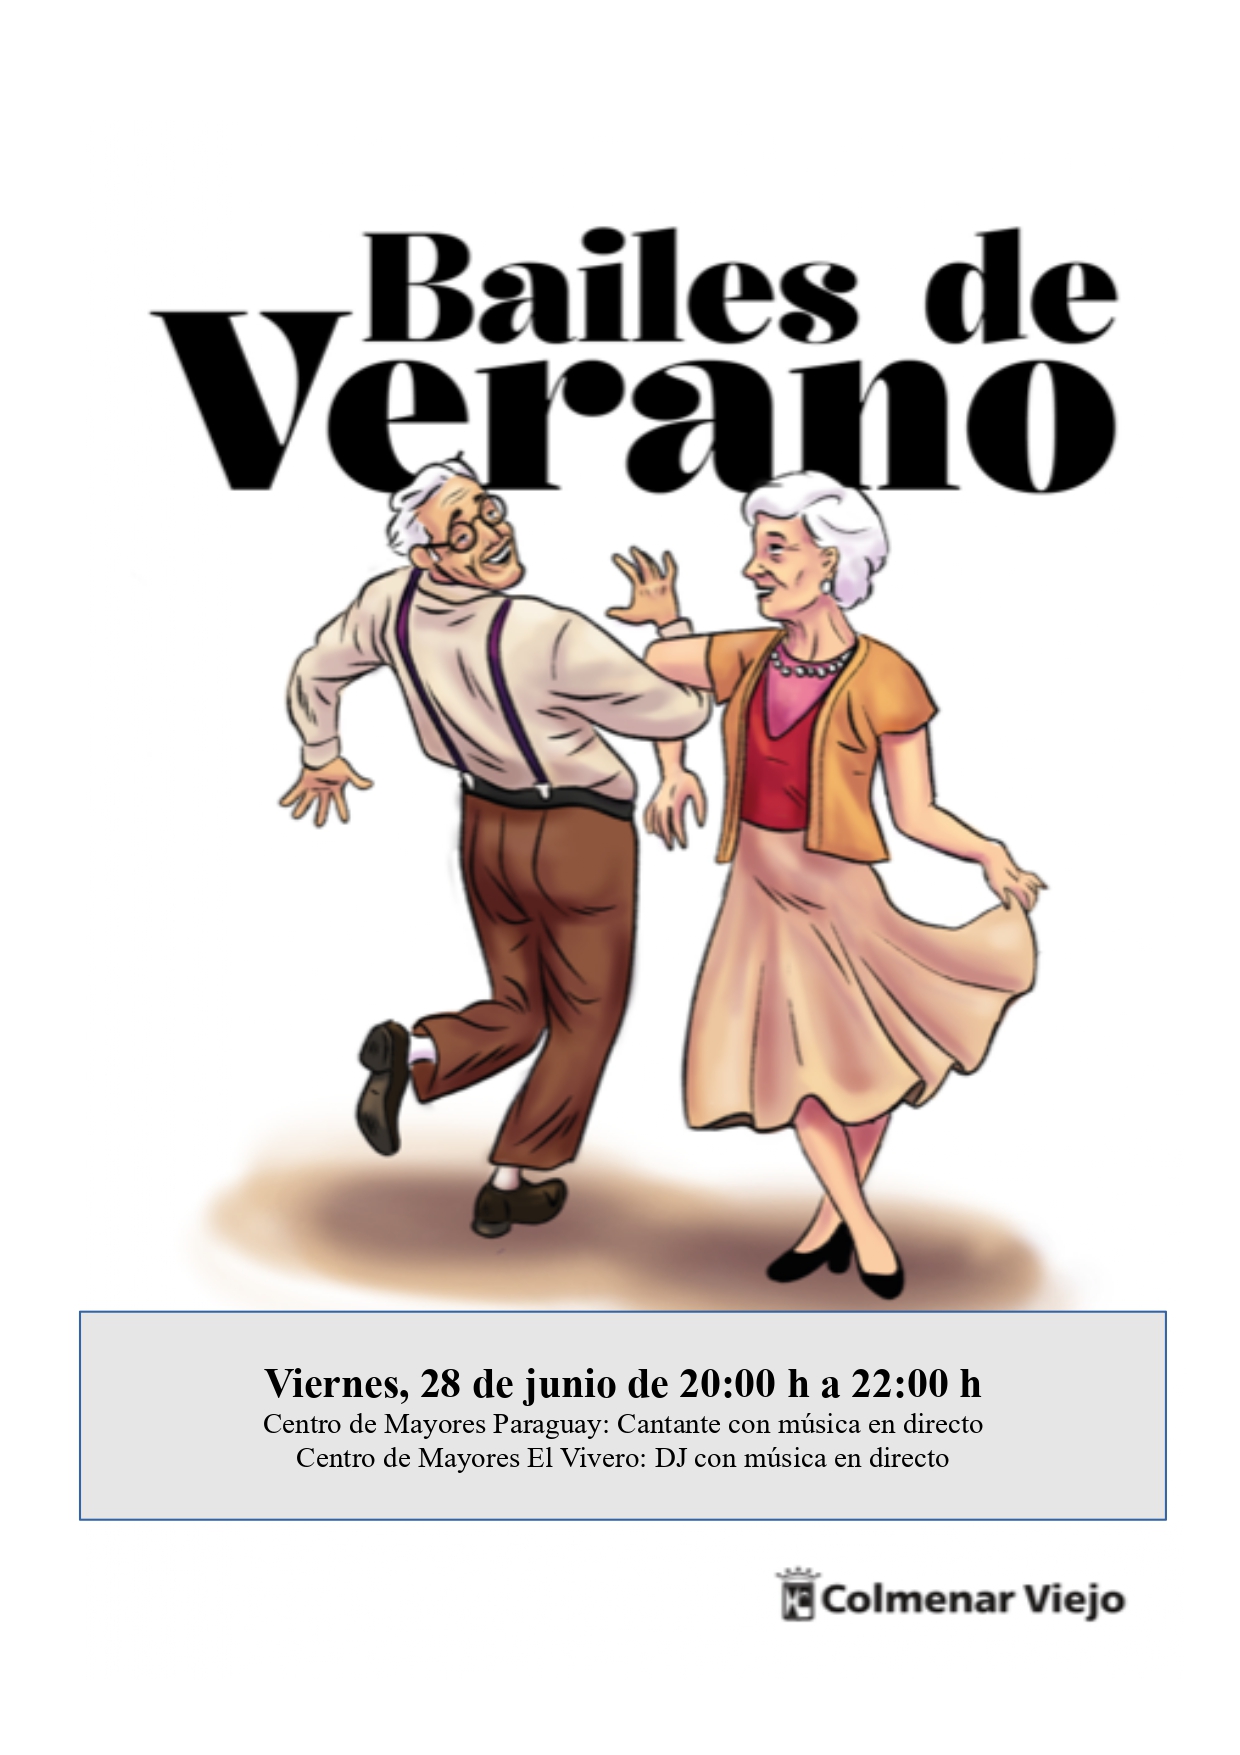 NdP Finde 28 30 junio Bailes de Verano en Centros de Mayores